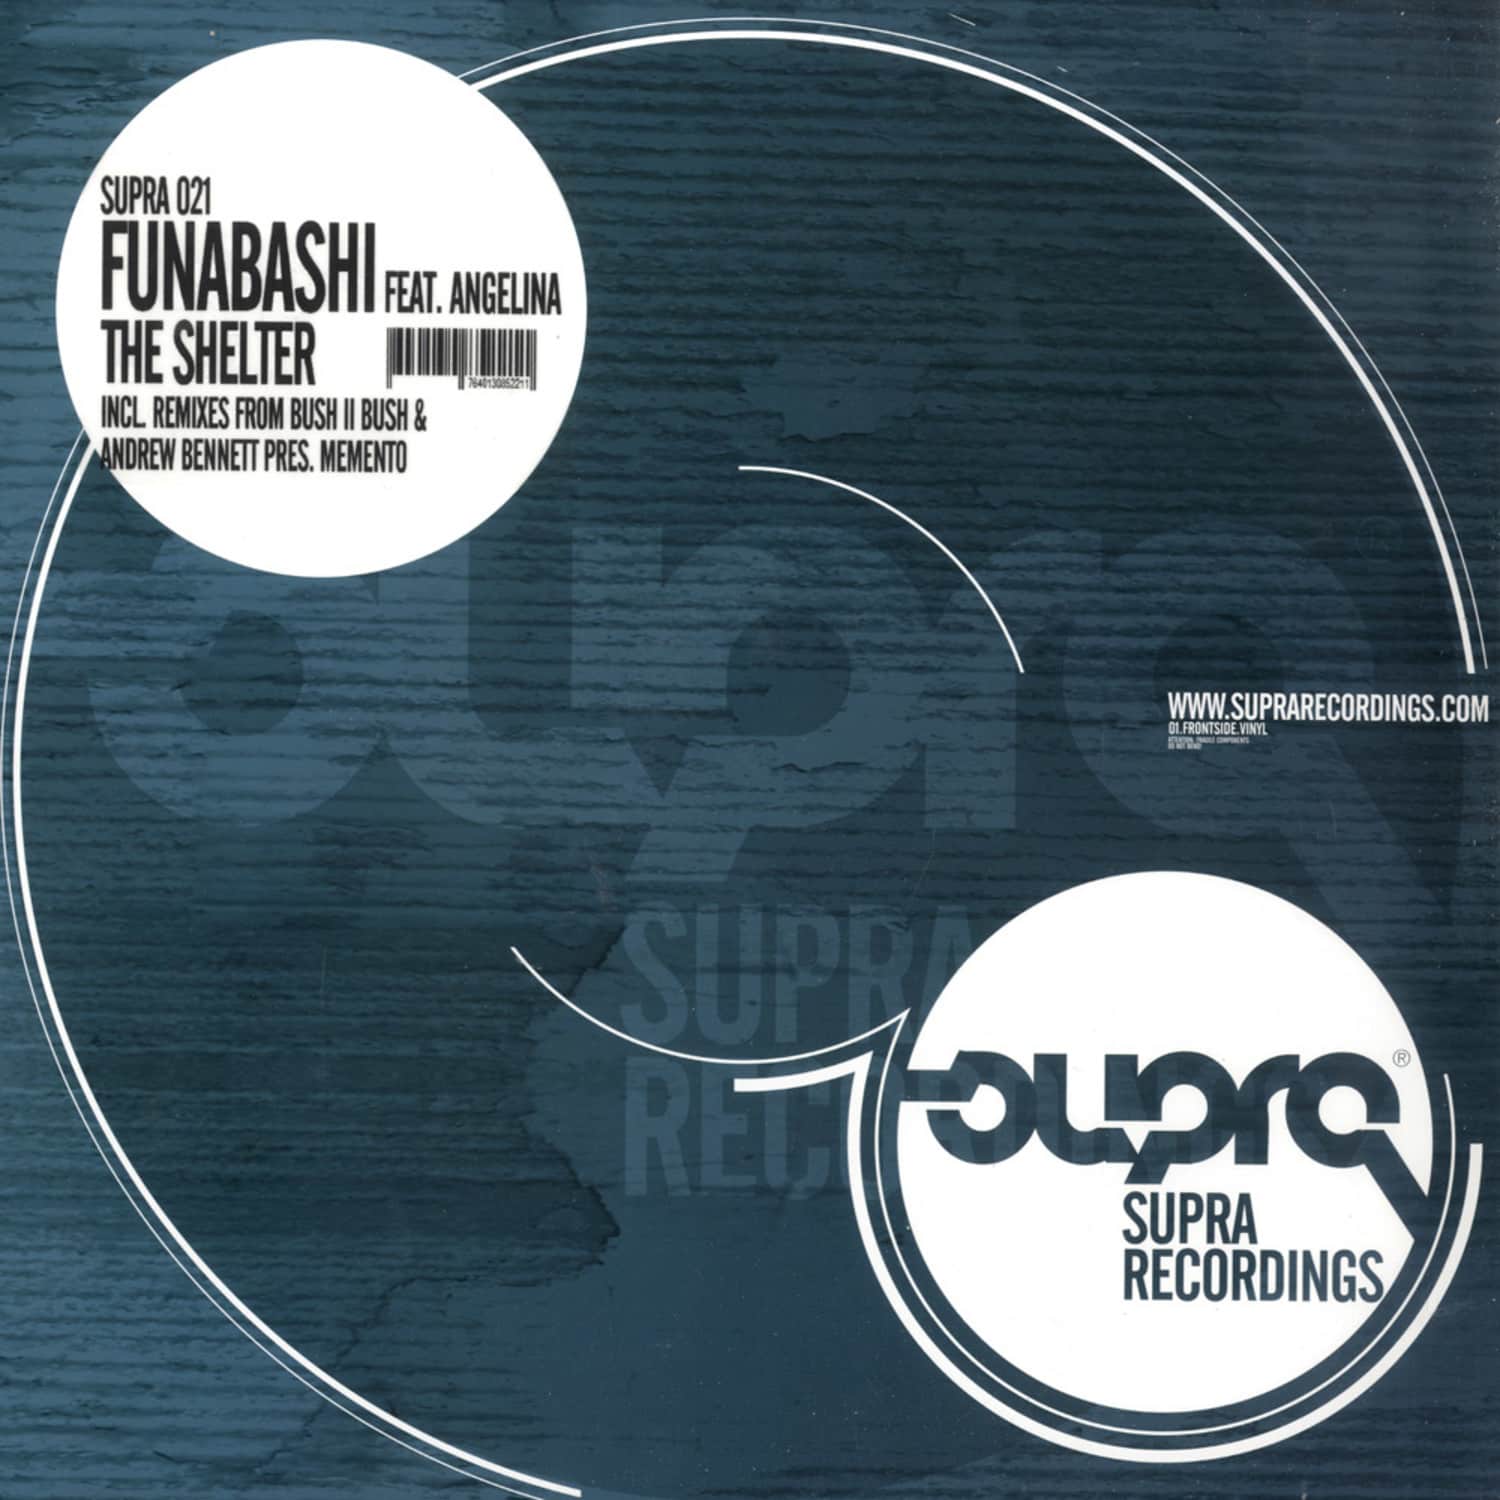 Funabashi feat. Angelina - THE SHELTER